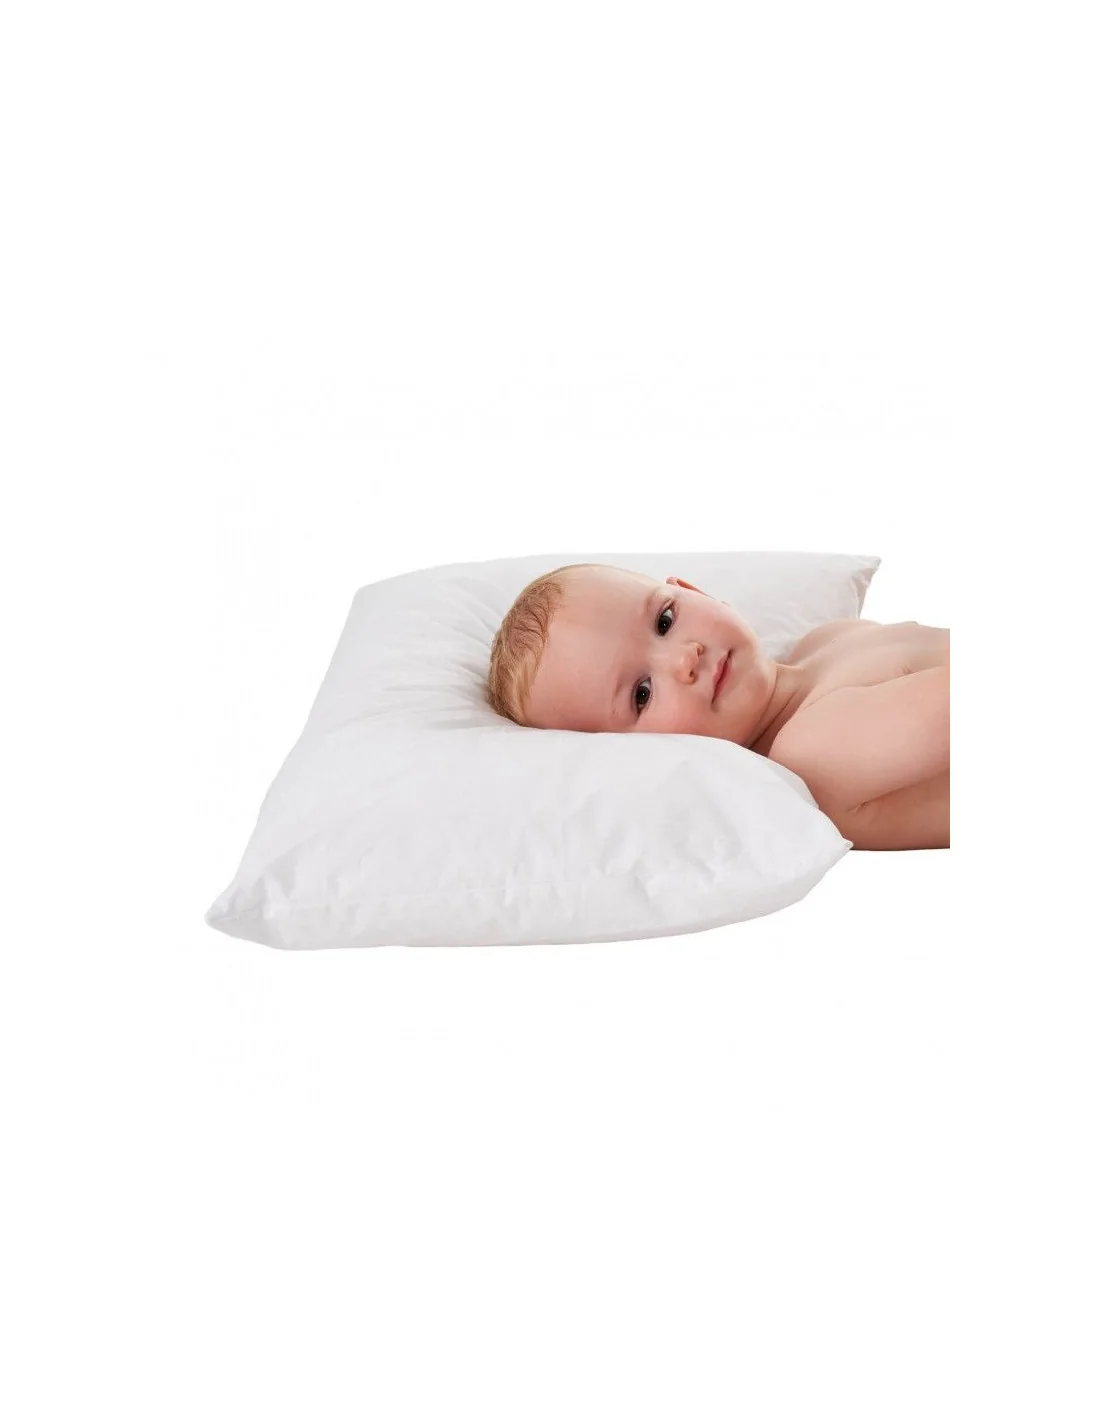 Bien choisir le premier oreiller de bébé